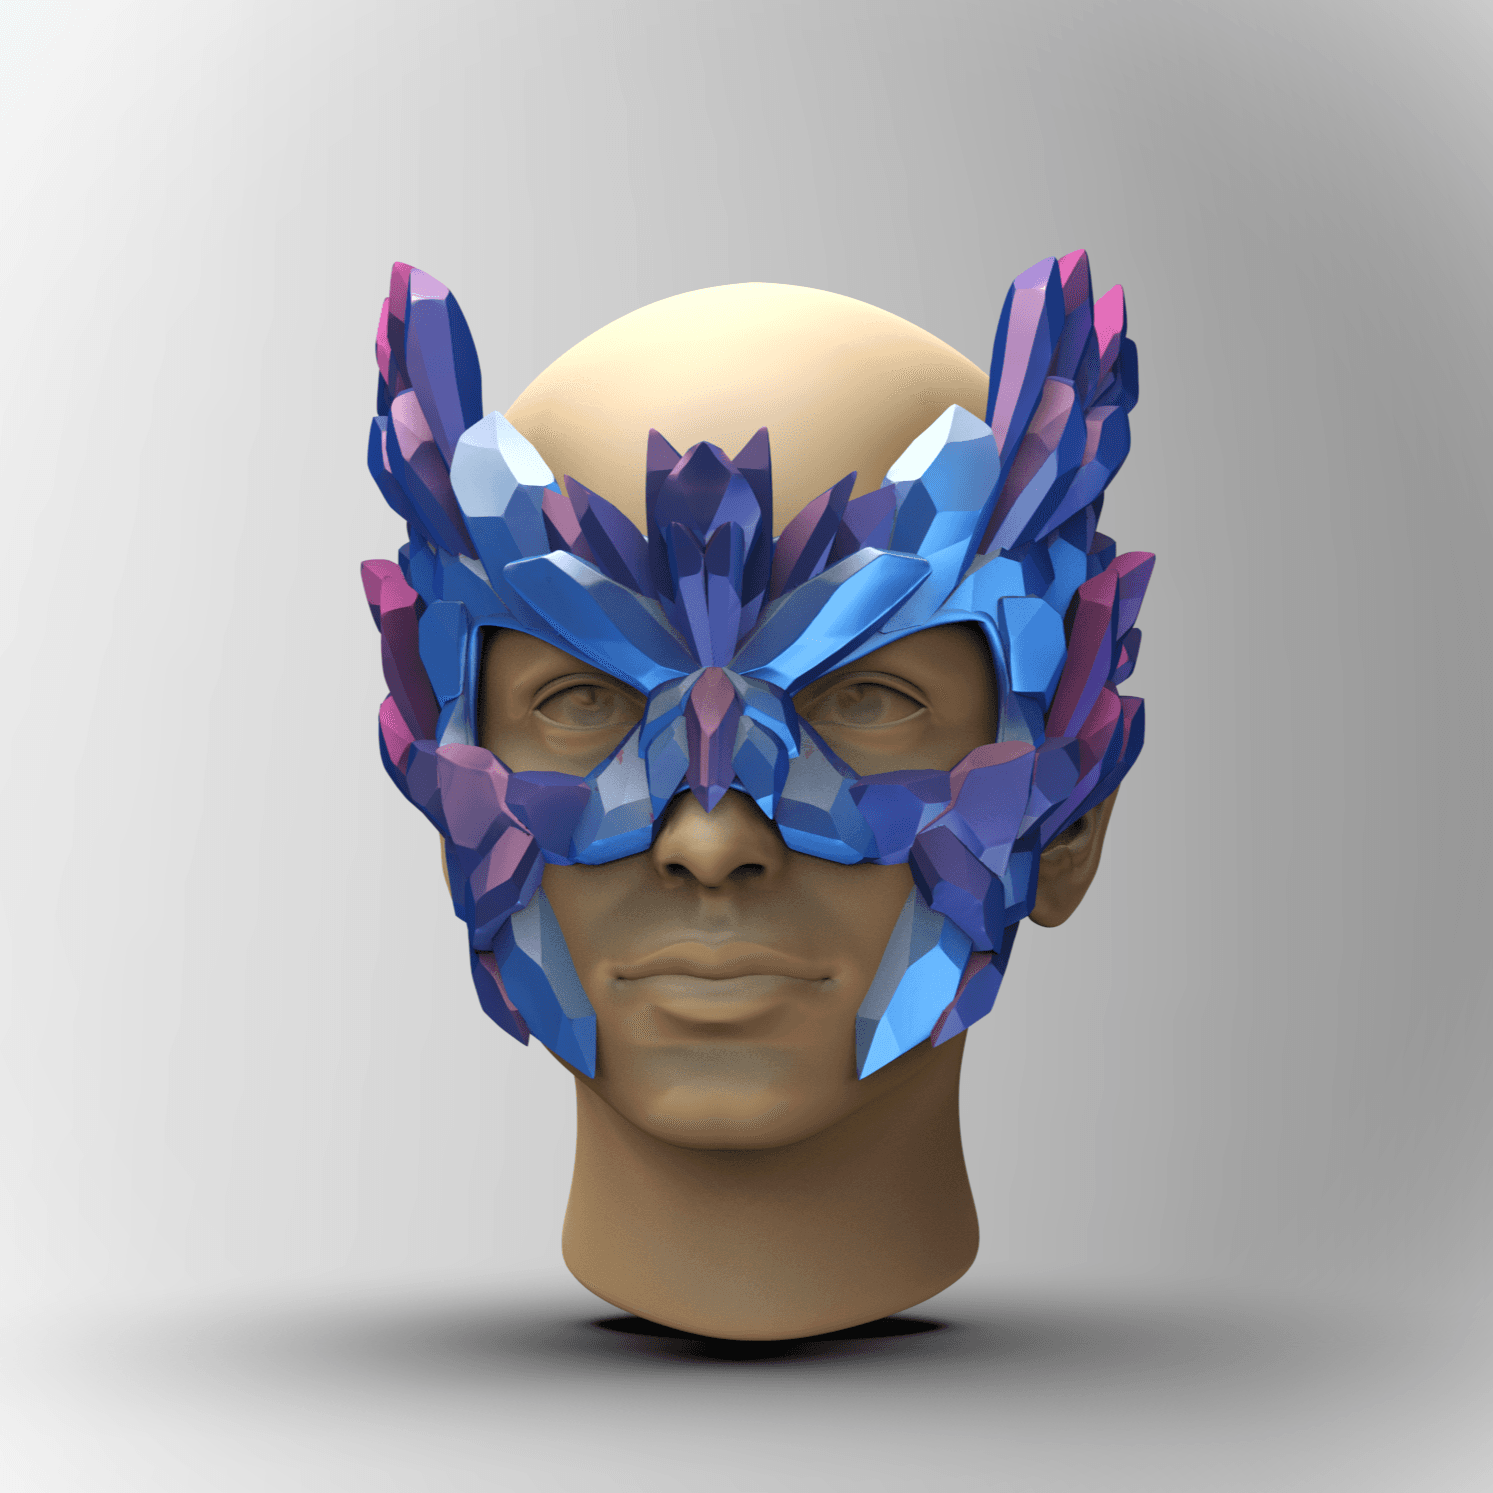 Crystal Sorcerer Mask - "Sorcery" (Sculptober Day 10) 3d model